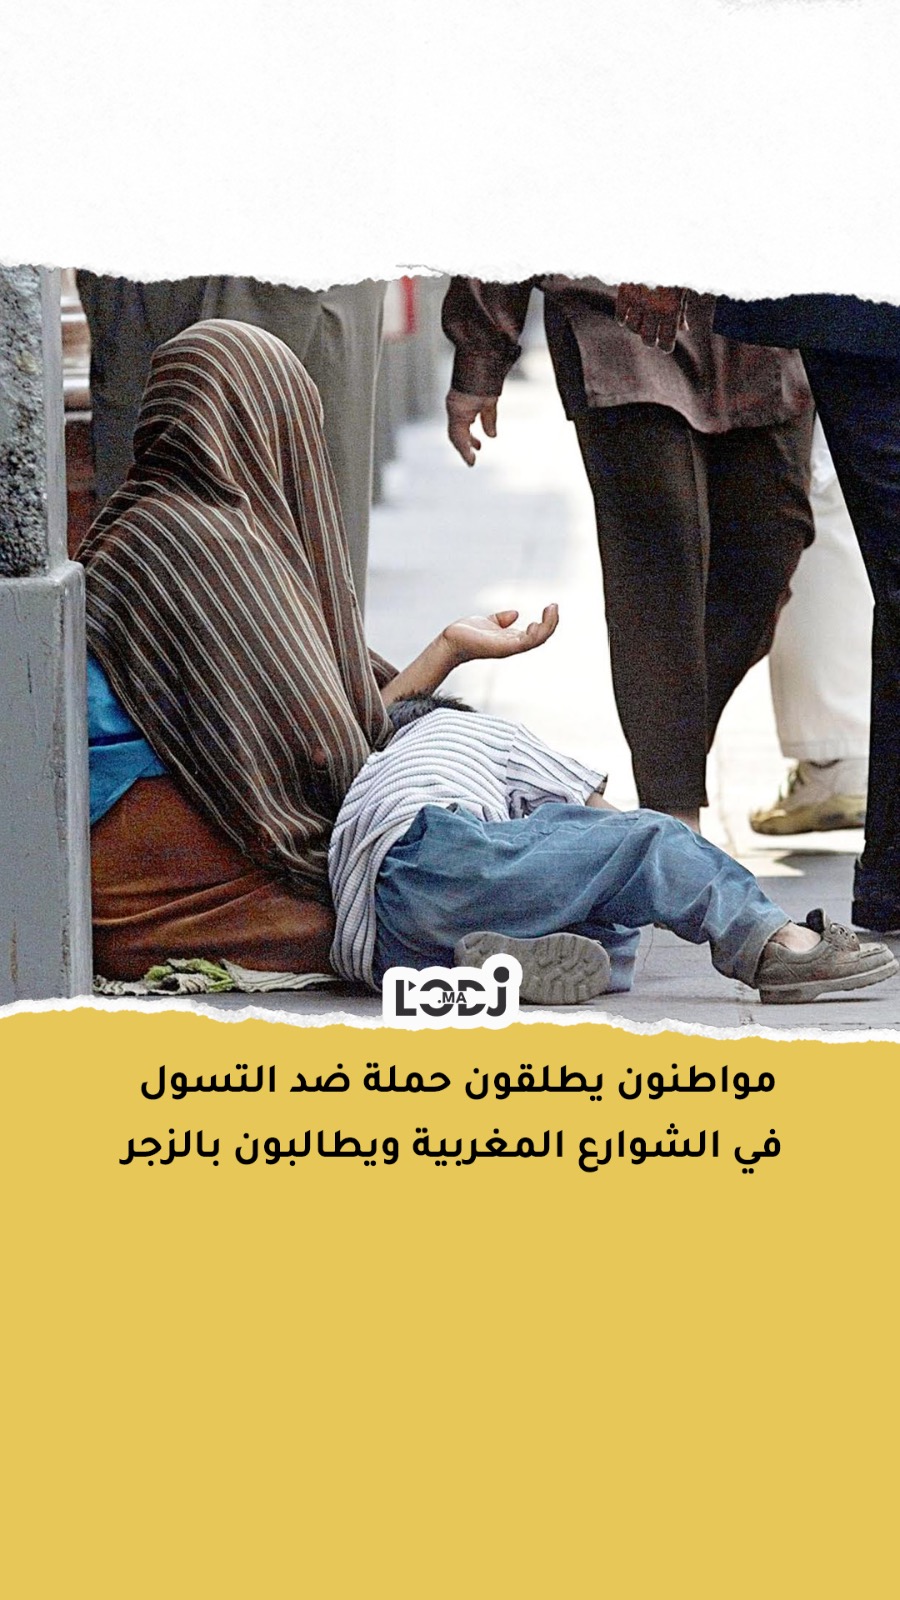 مواطنون يطلقون حملة ضد التسول في الشوارع المغربية ويطالبون بالزجر